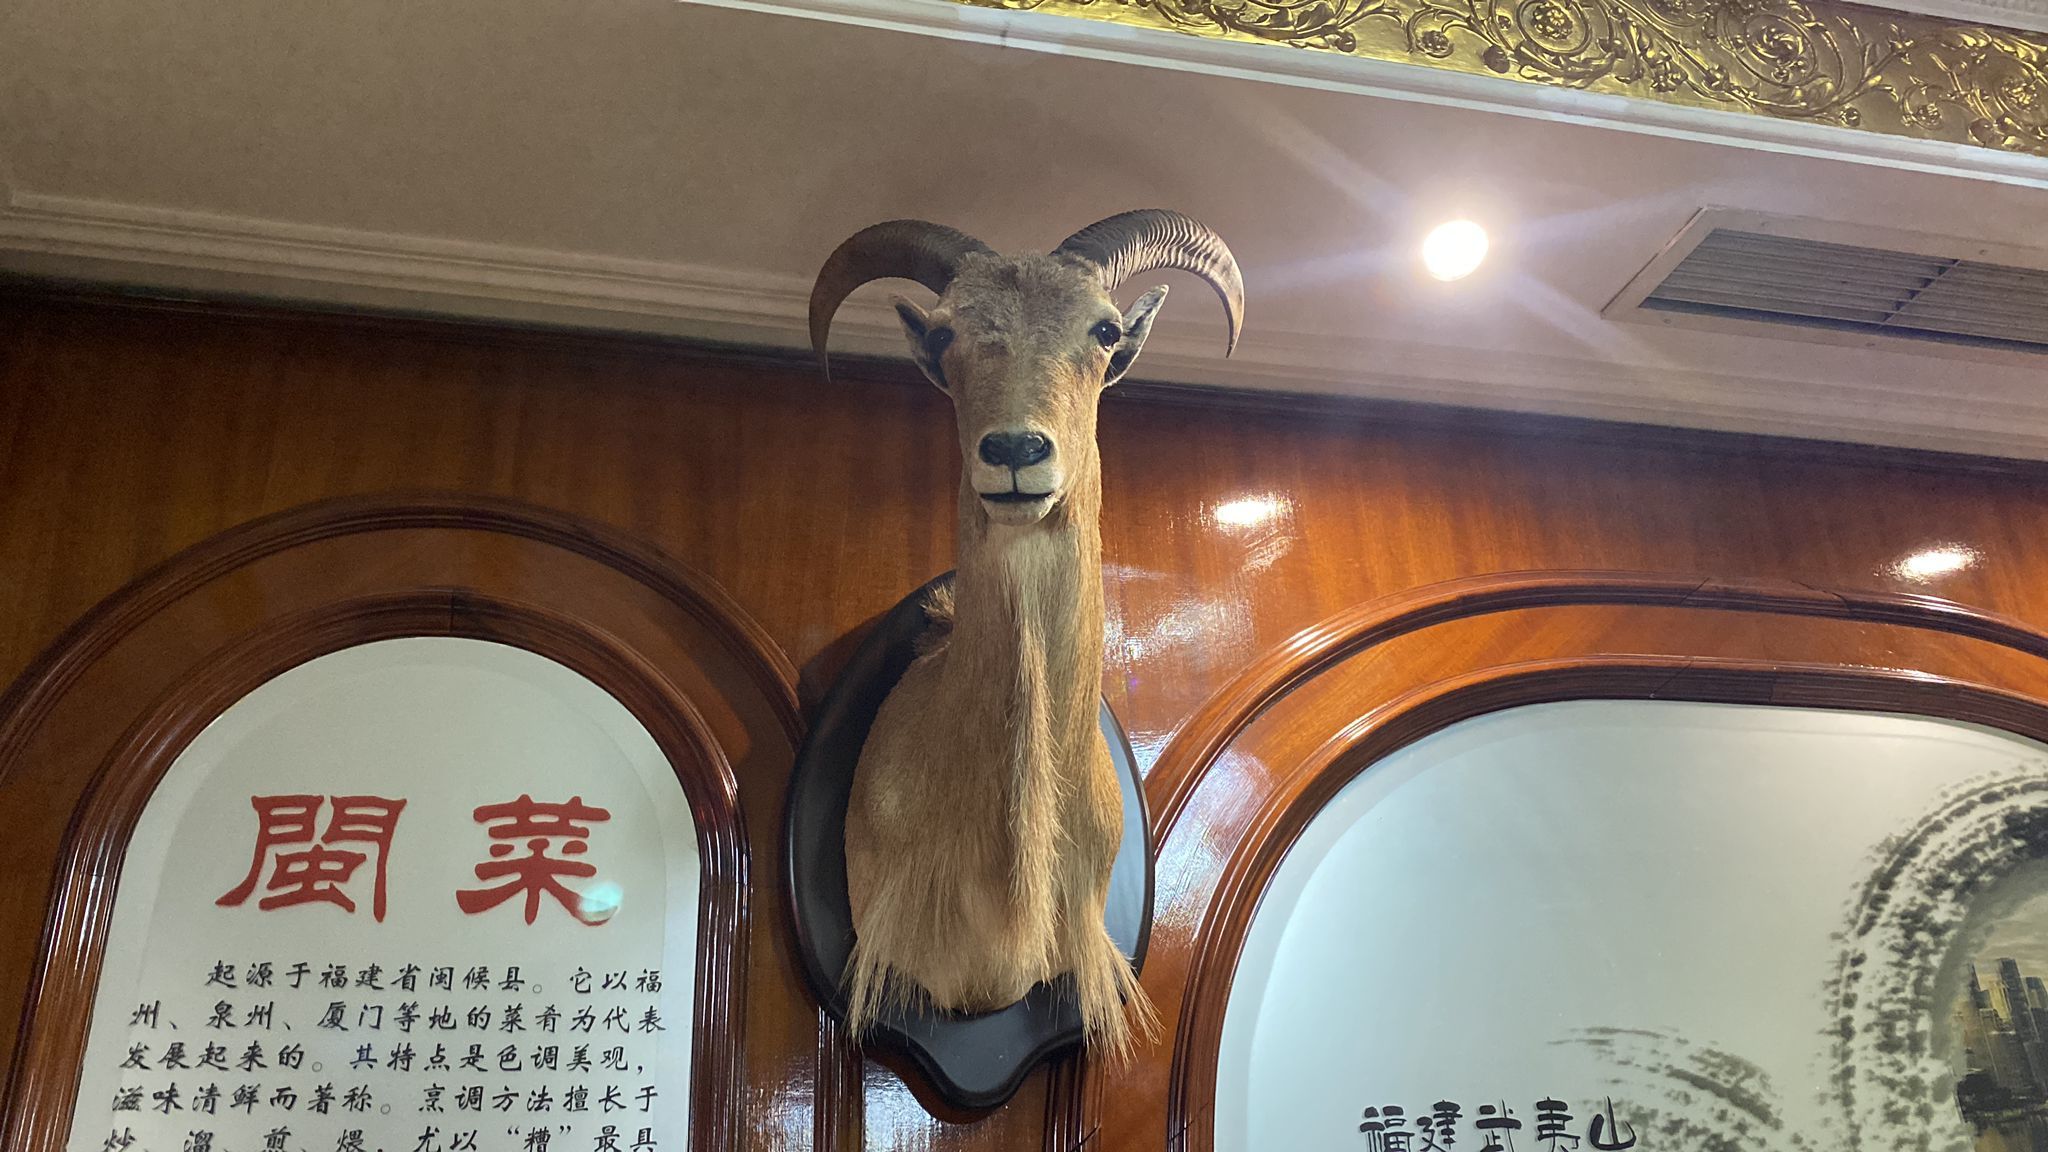 Uno de los animales disecados hallado en el restaurante chino